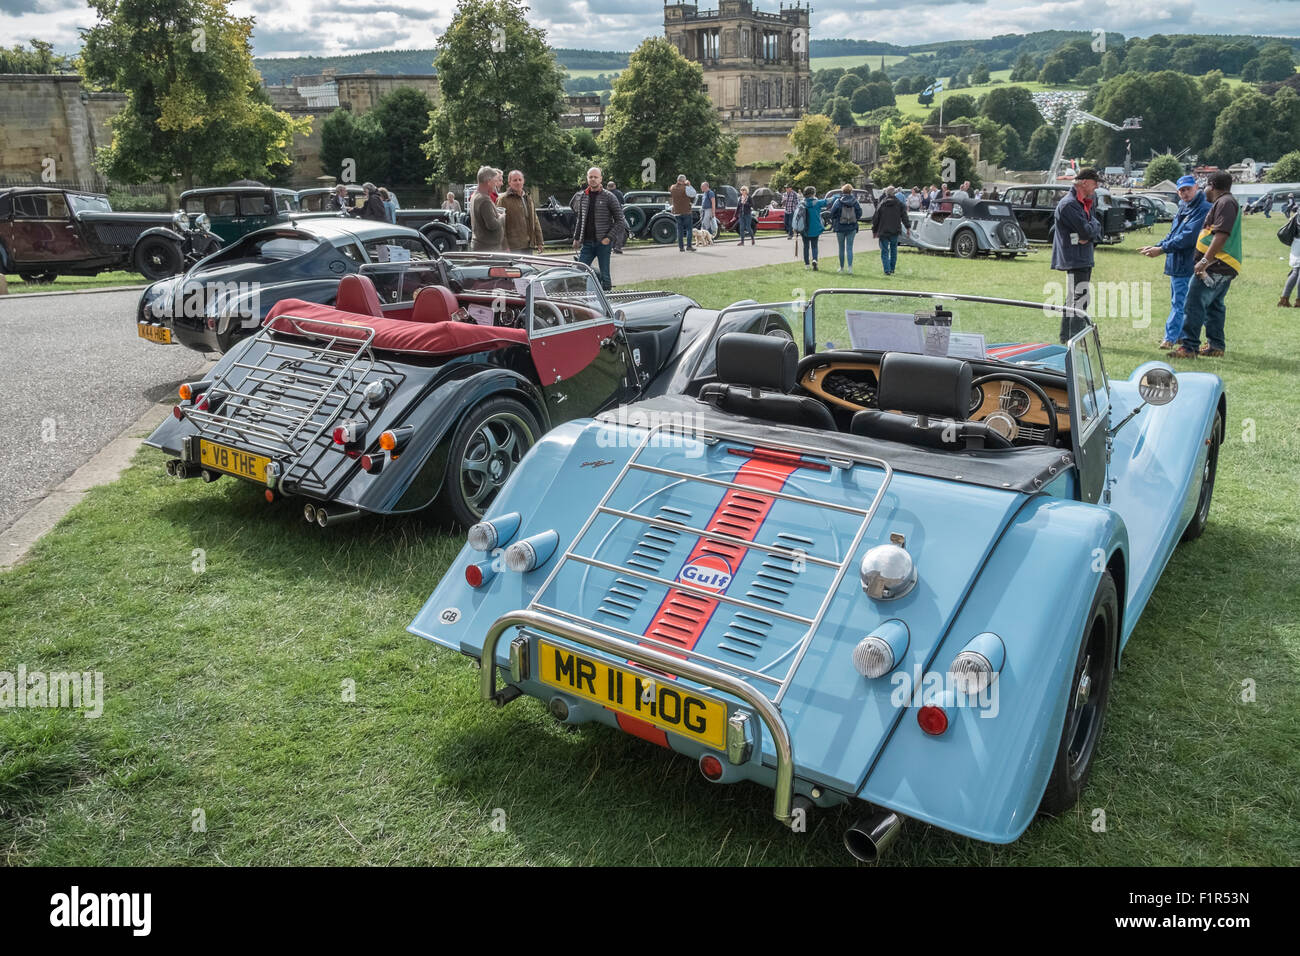 Classic automobiles sur l'affichage à un pays juste cause, Chatsworth House, Derbyshire, Angleterre, Royaume-Uni Banque D'Images